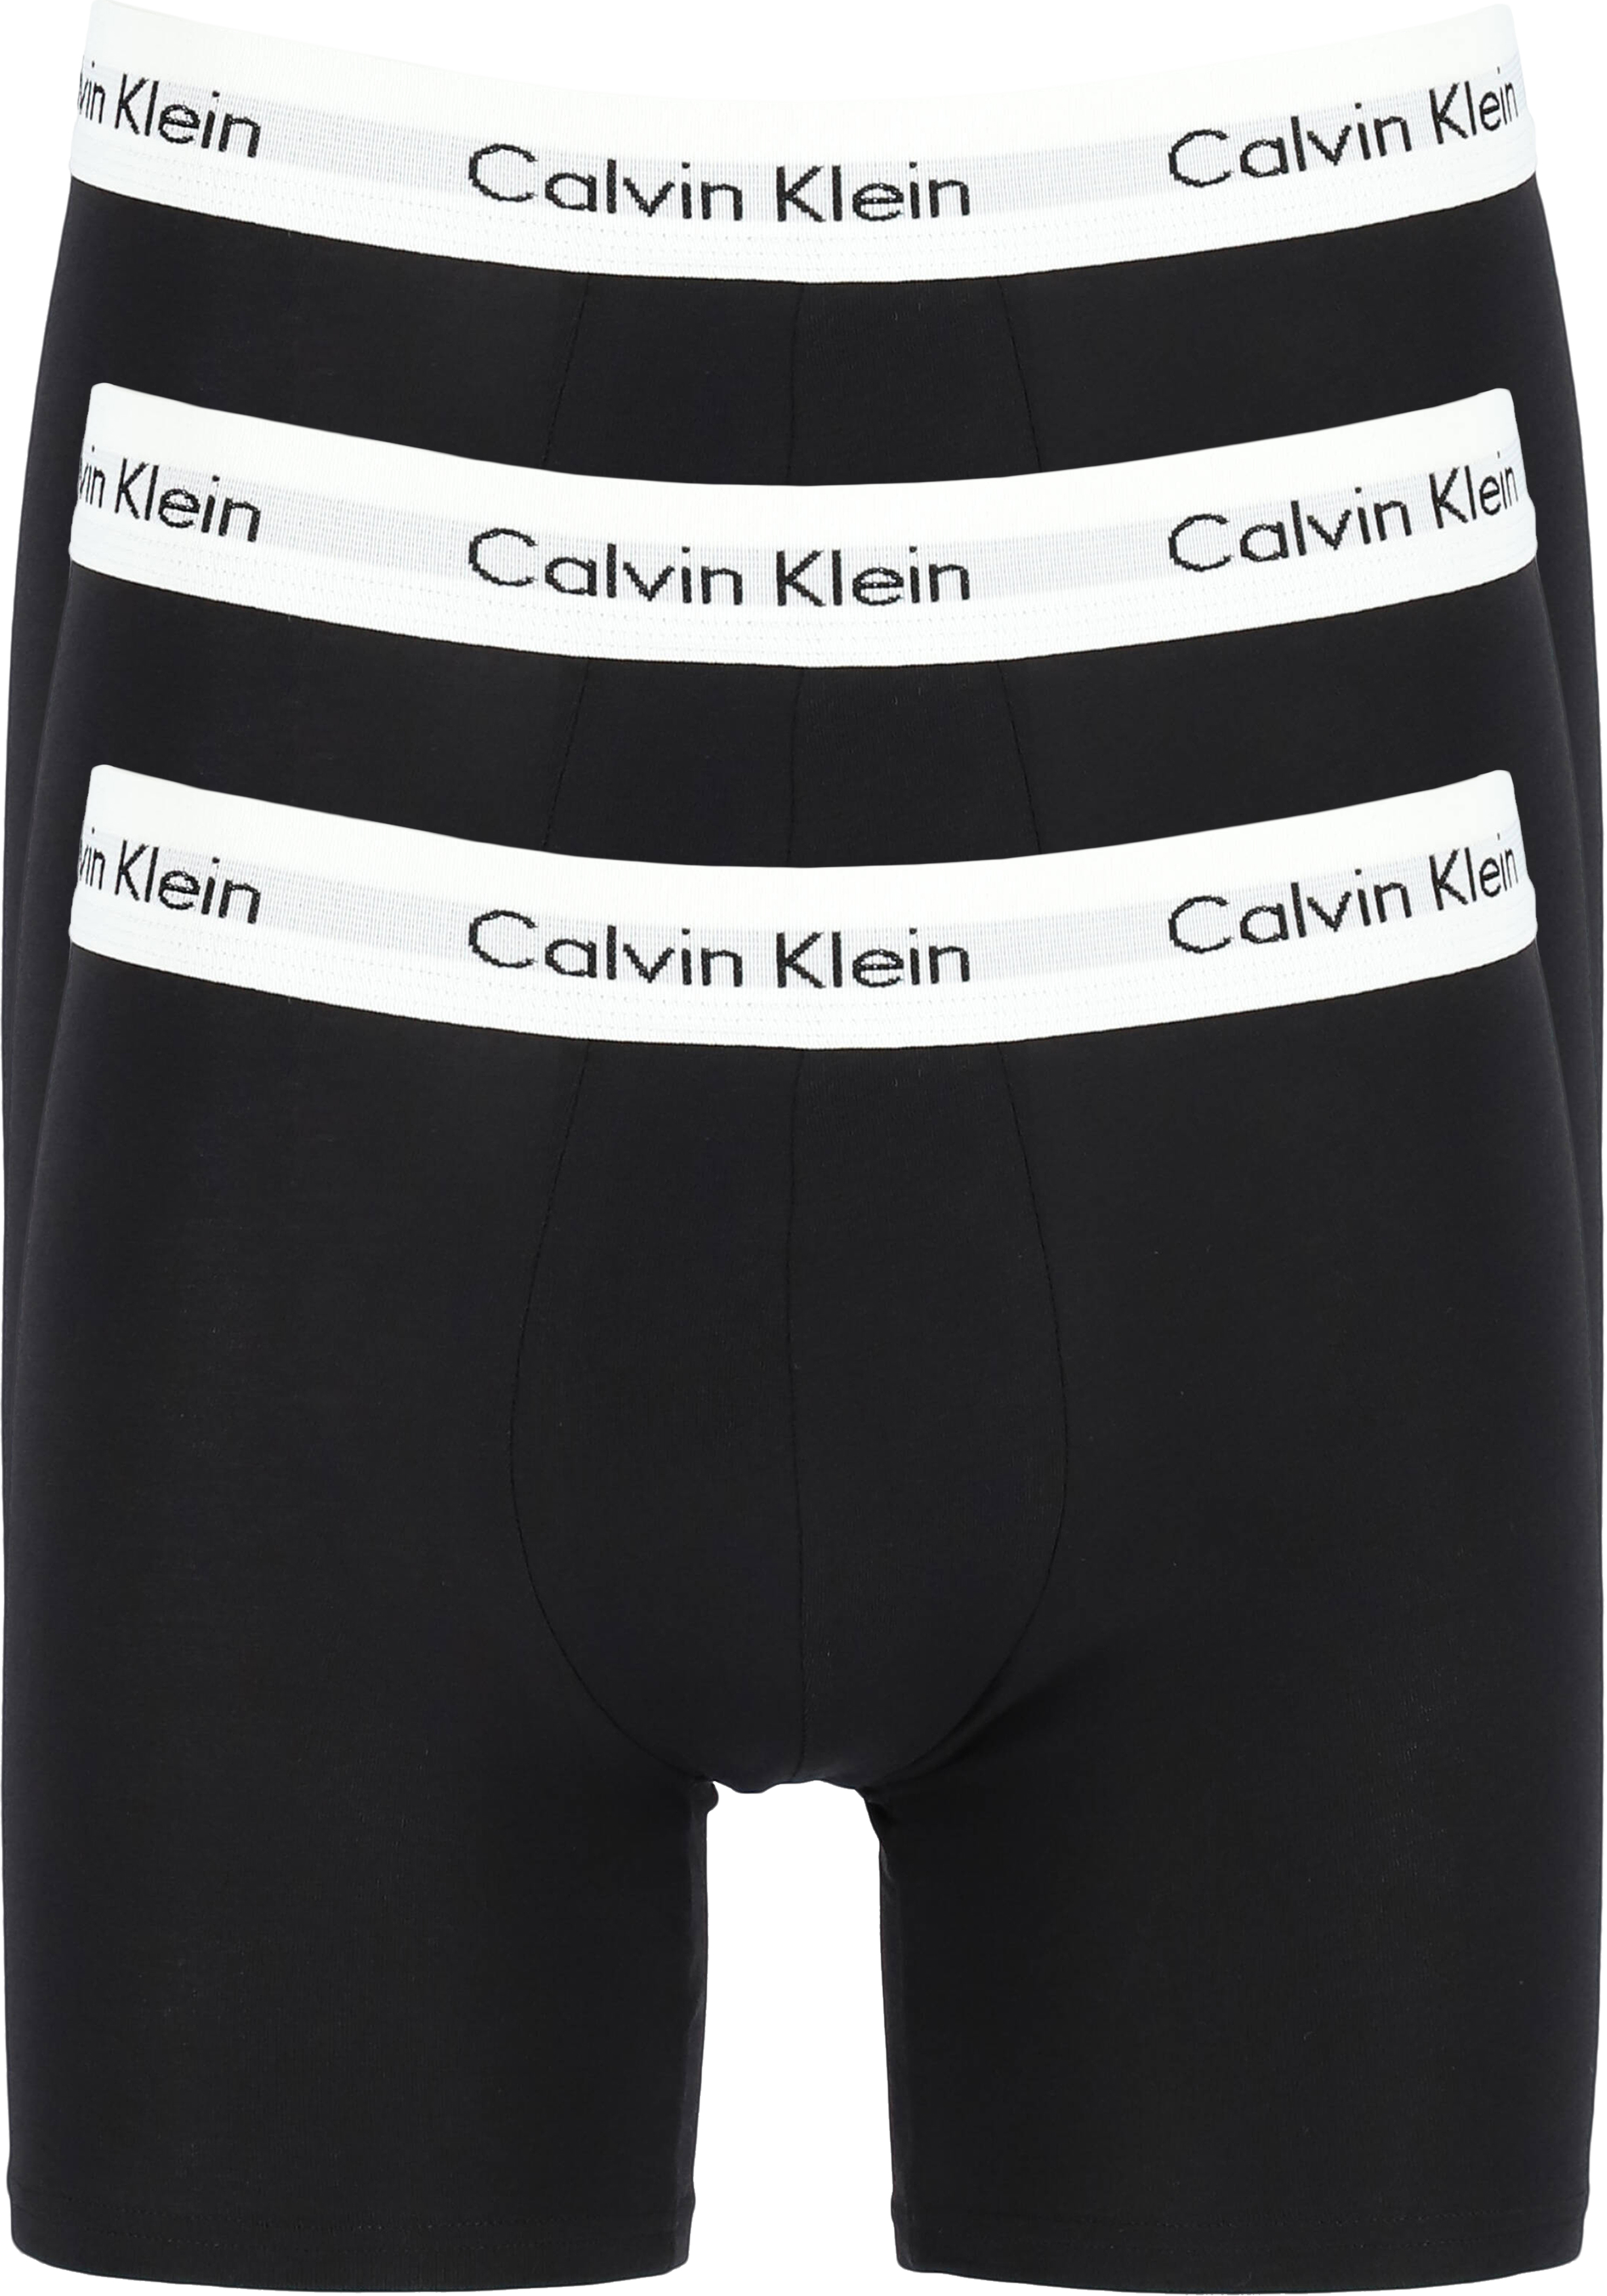 Oefening Nacht kan niet zien Calvin Klein Cotton Stretch boxer brief (3-pack), heren boxers extra... -  Shop de nieuwste voorjaarsmode